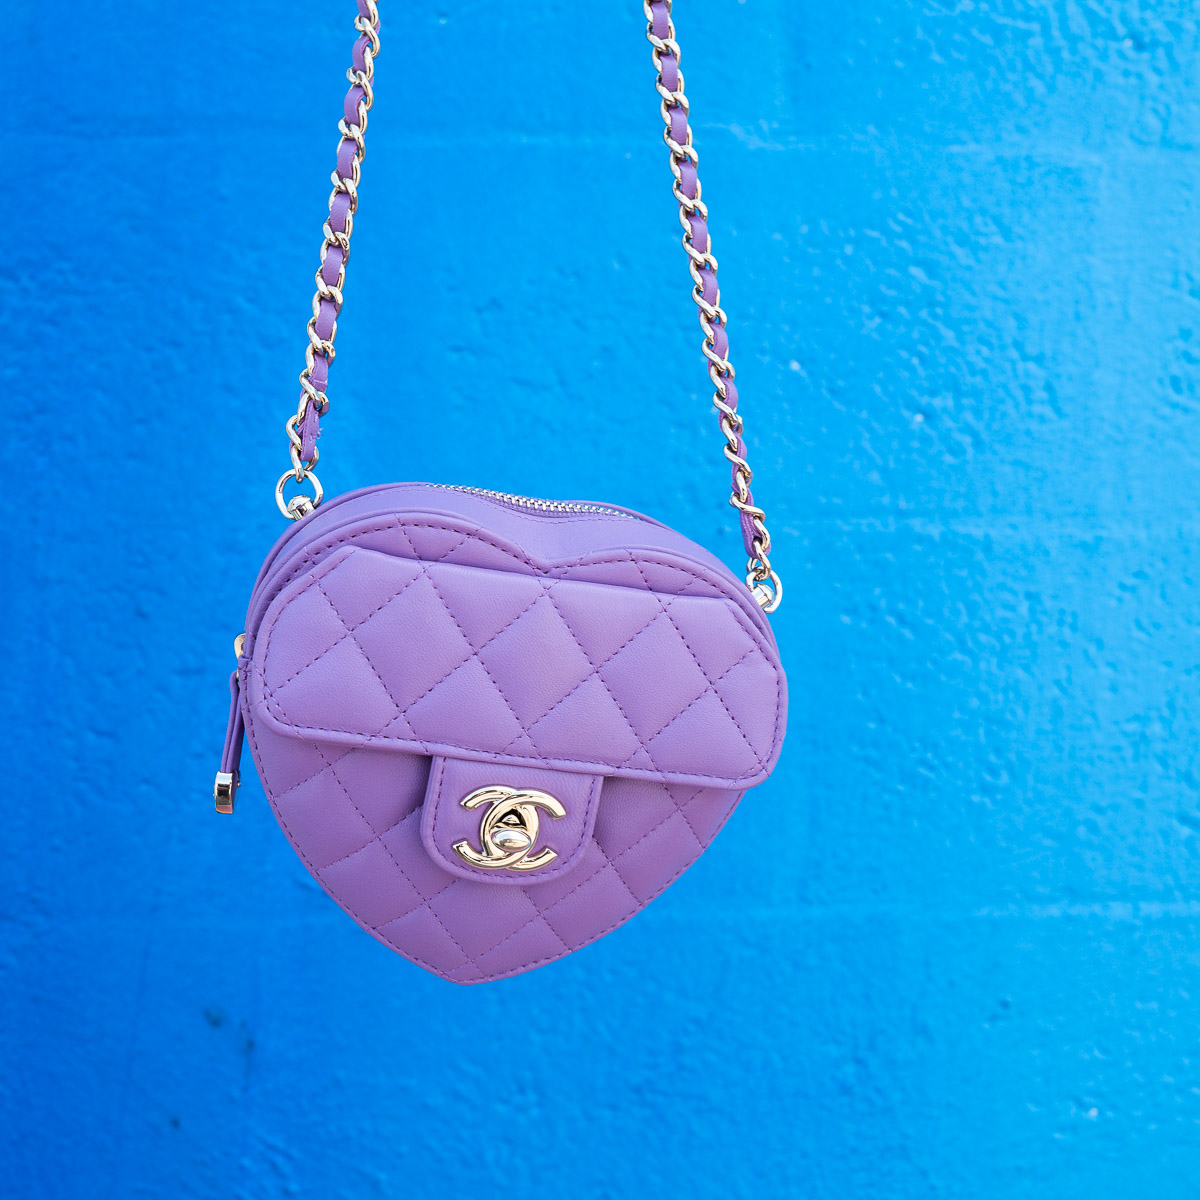 Chanel Heart Shape Zip Arm Coin Purse Lambskin Purple, Purple, One Size